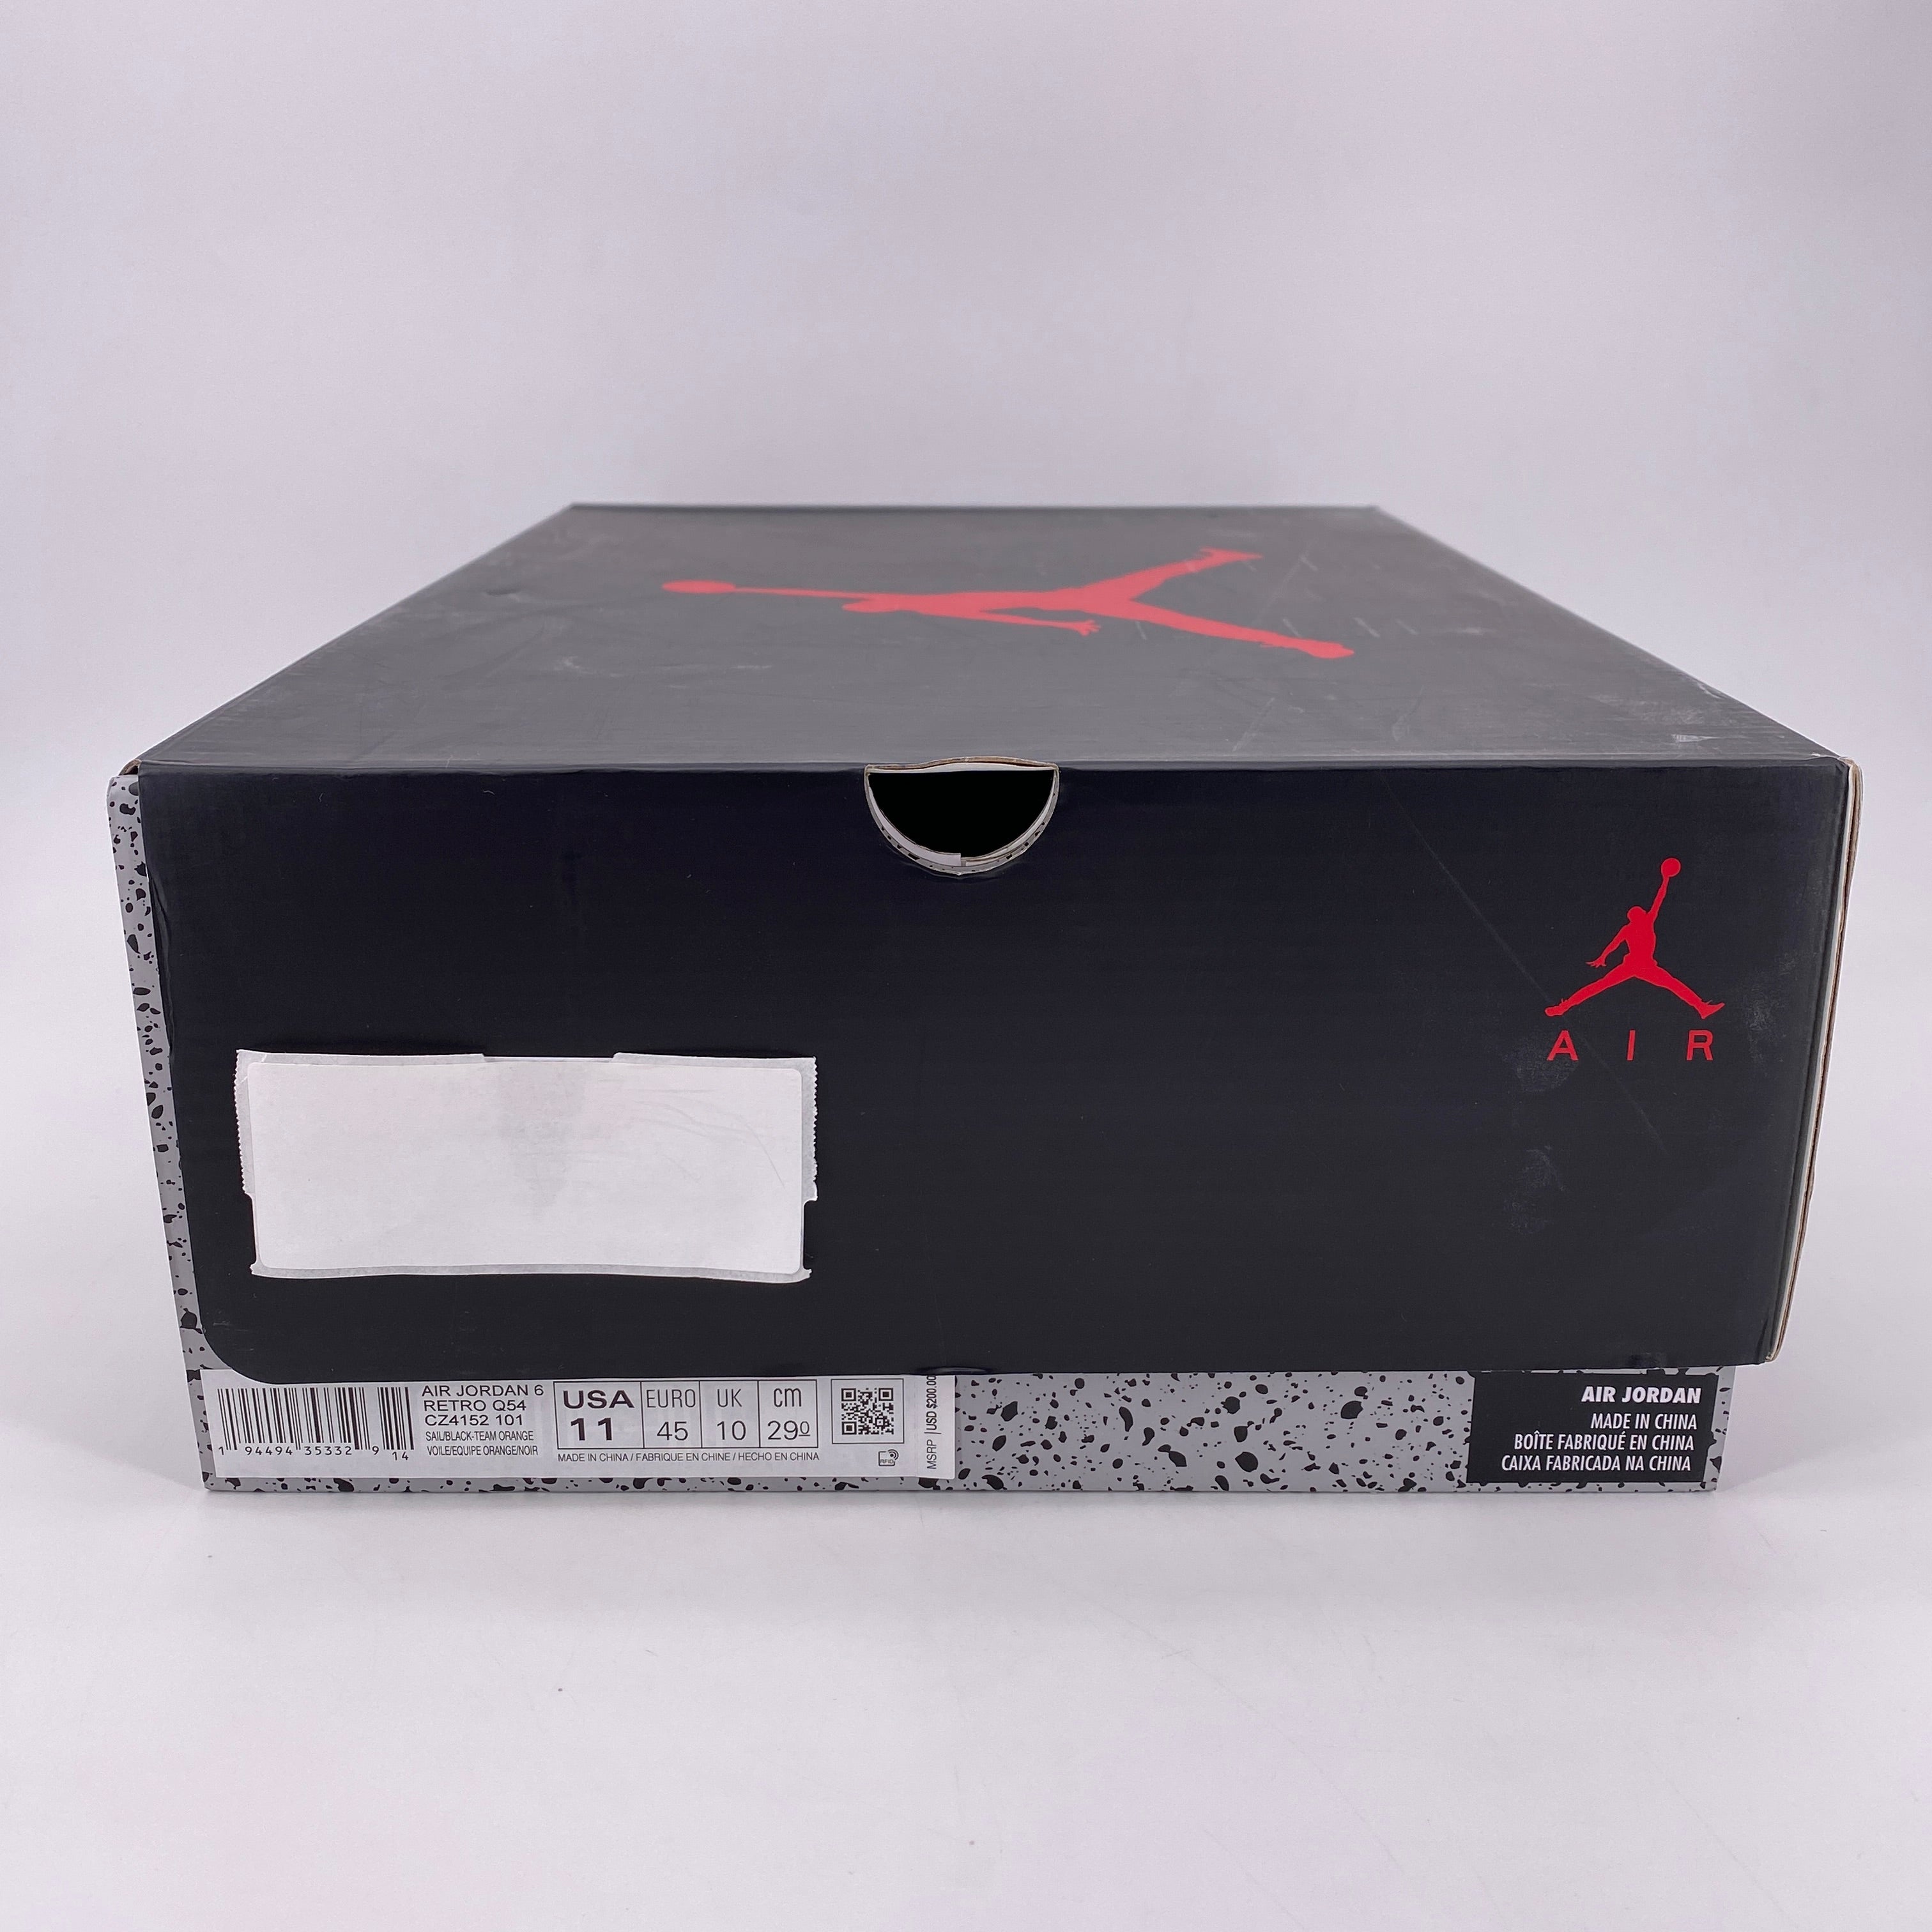 Air Jordan 6 Retro "Quai 54" 2020 New Size 11